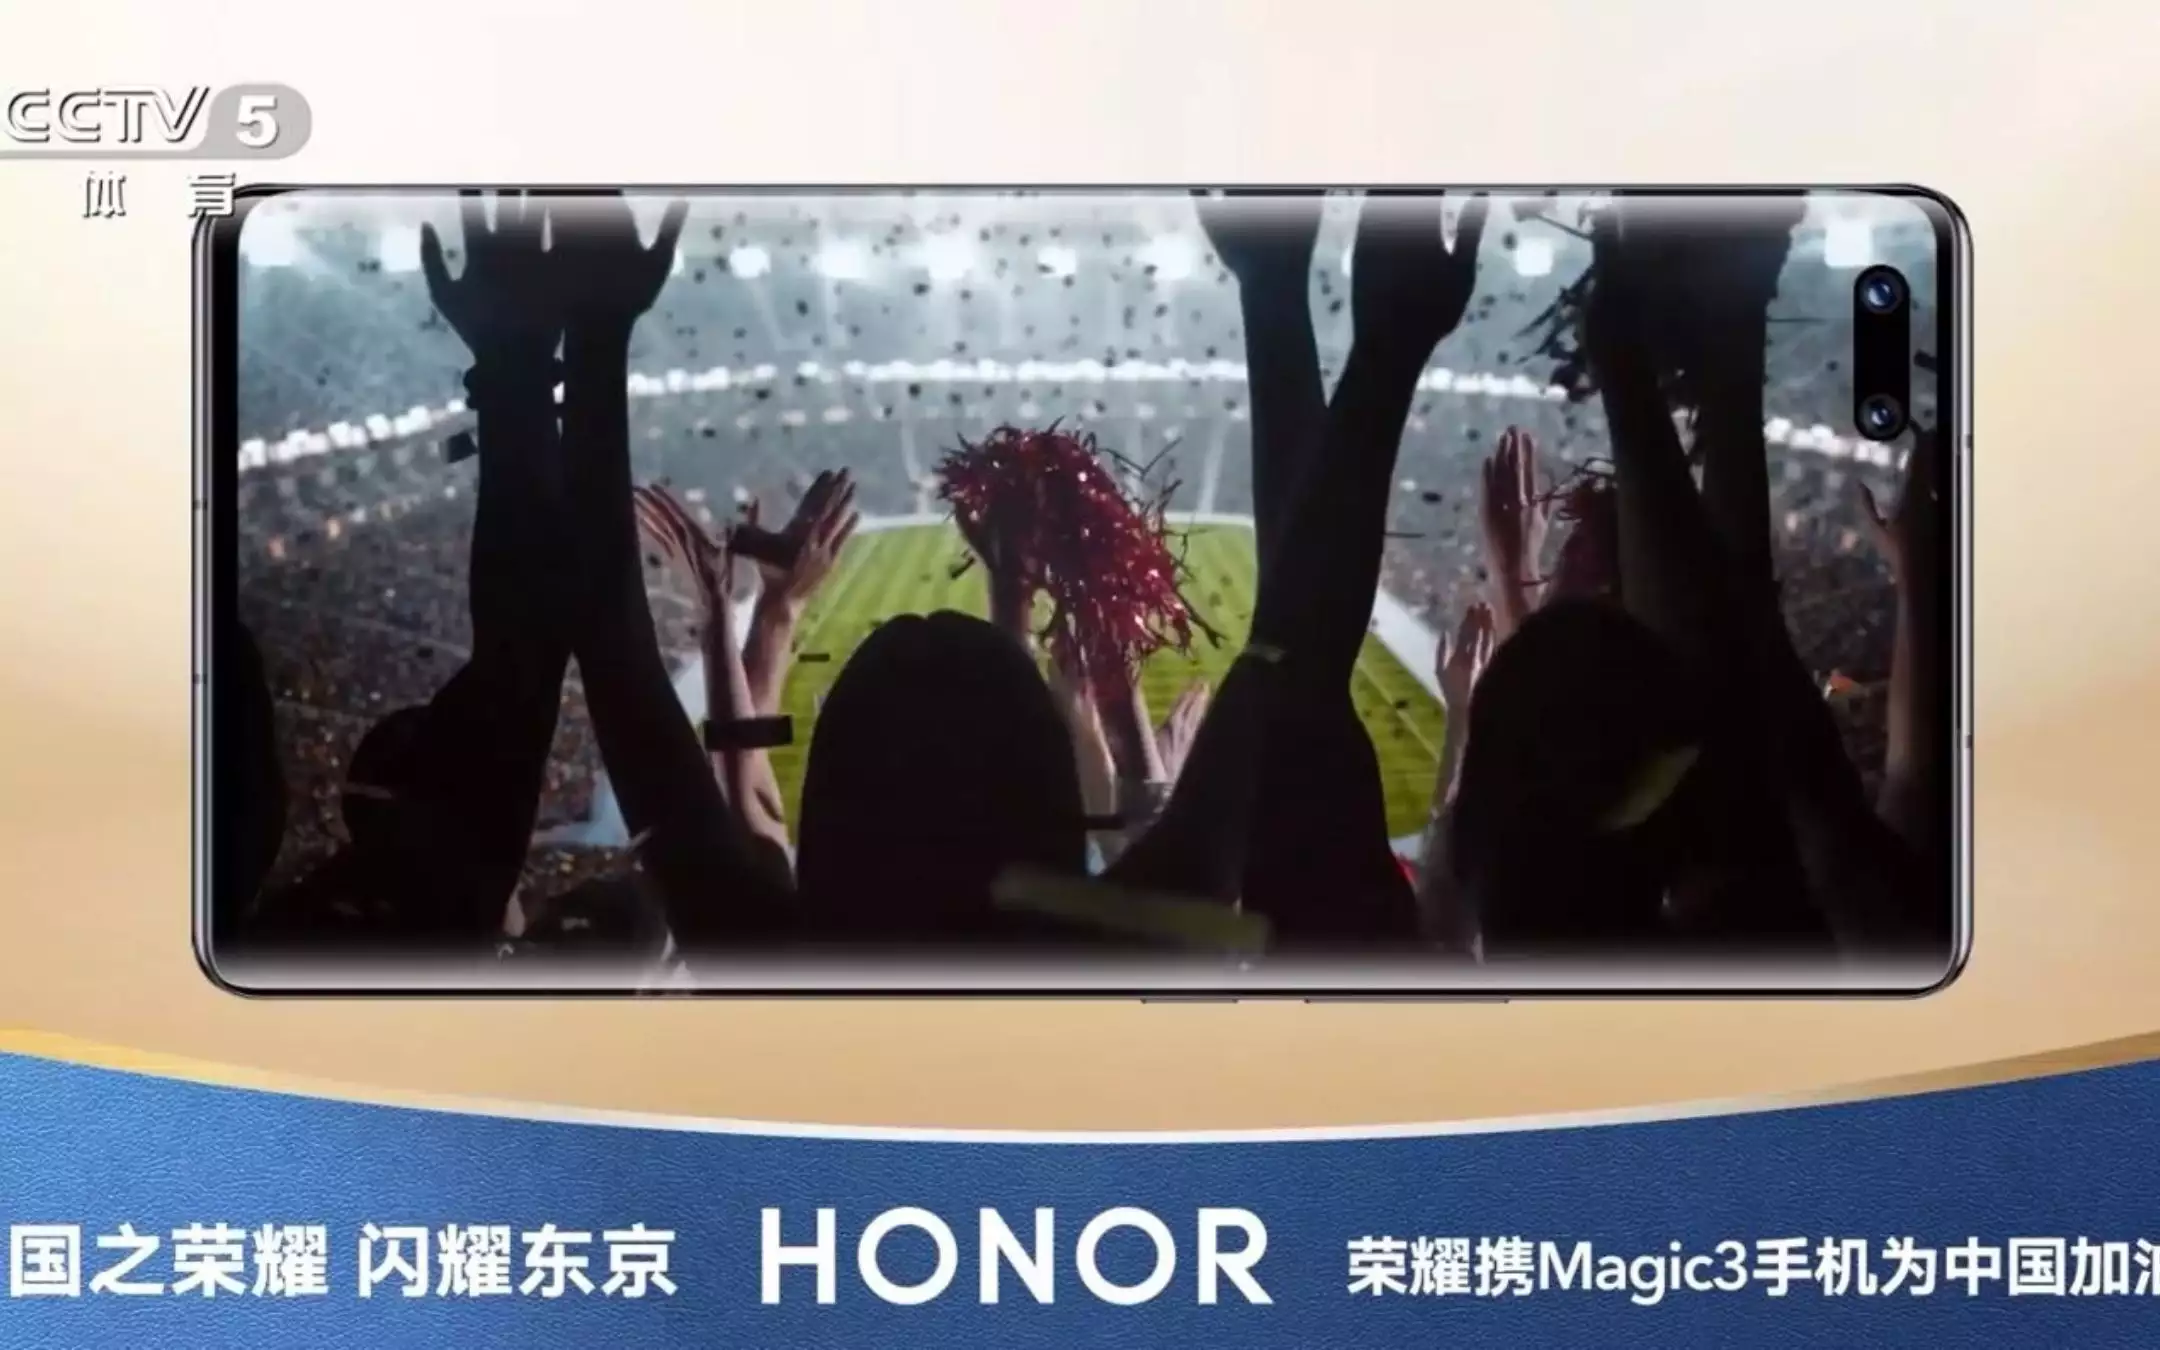 Honor Magic 3: eccolo in un poster teaser promozionale